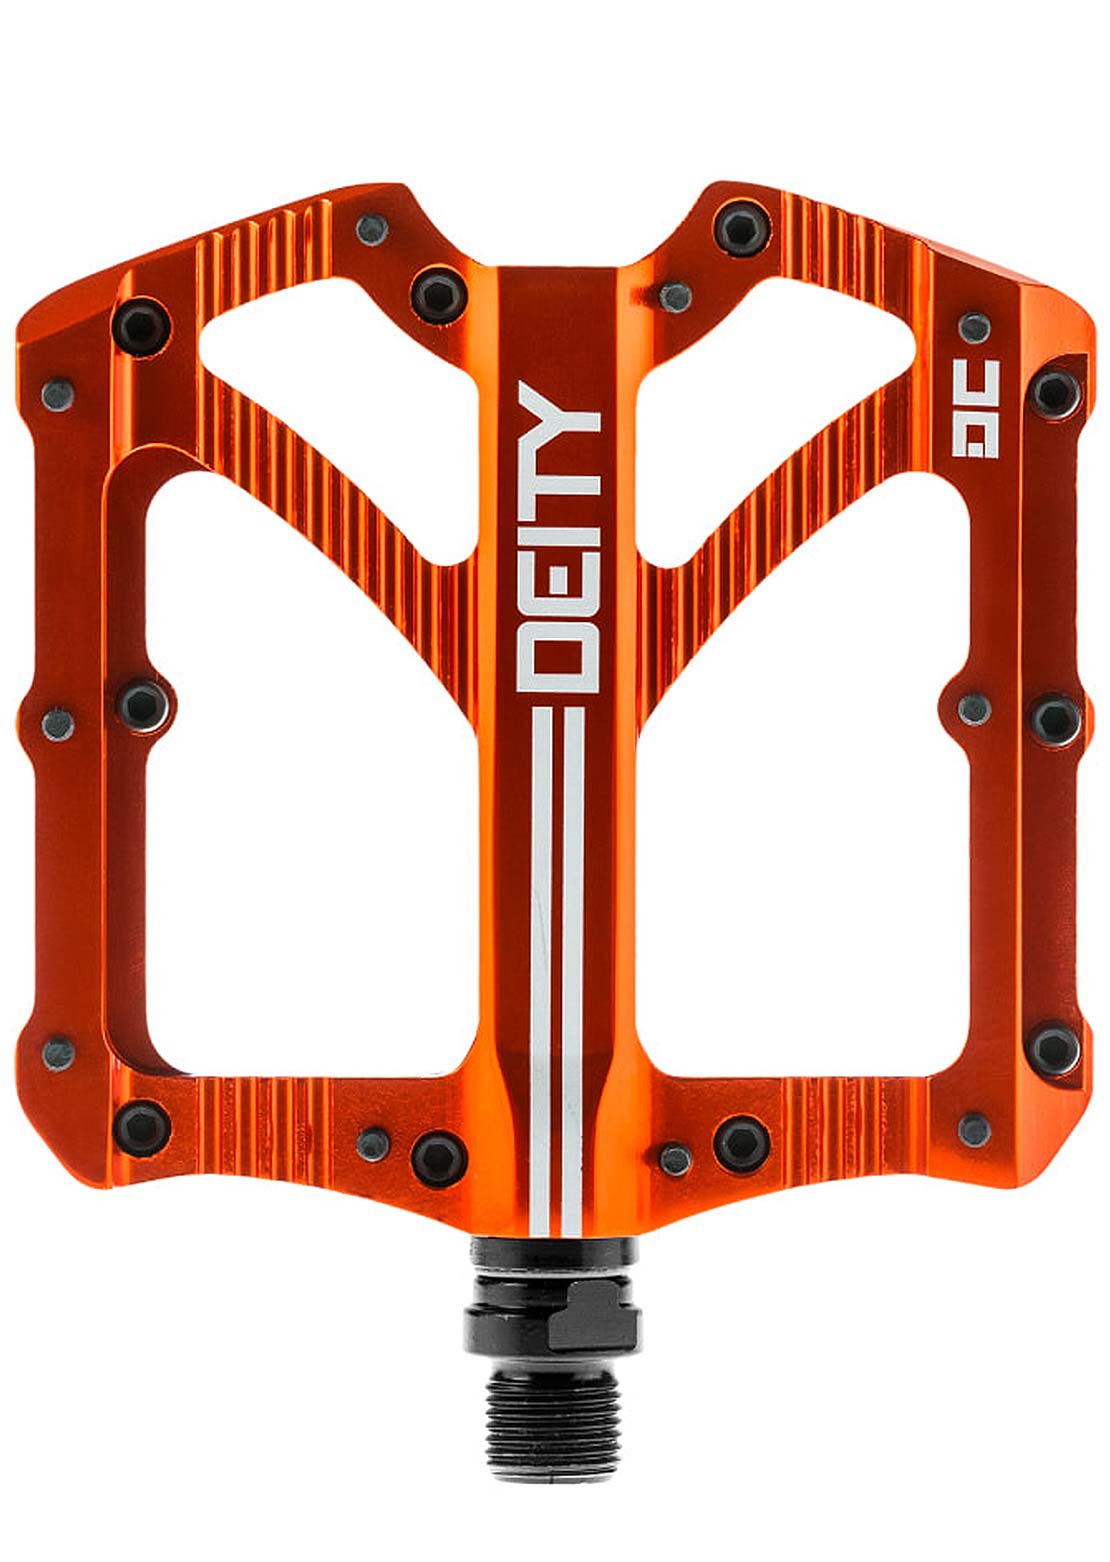 Deity Bladerunner Platform Pedals Orange